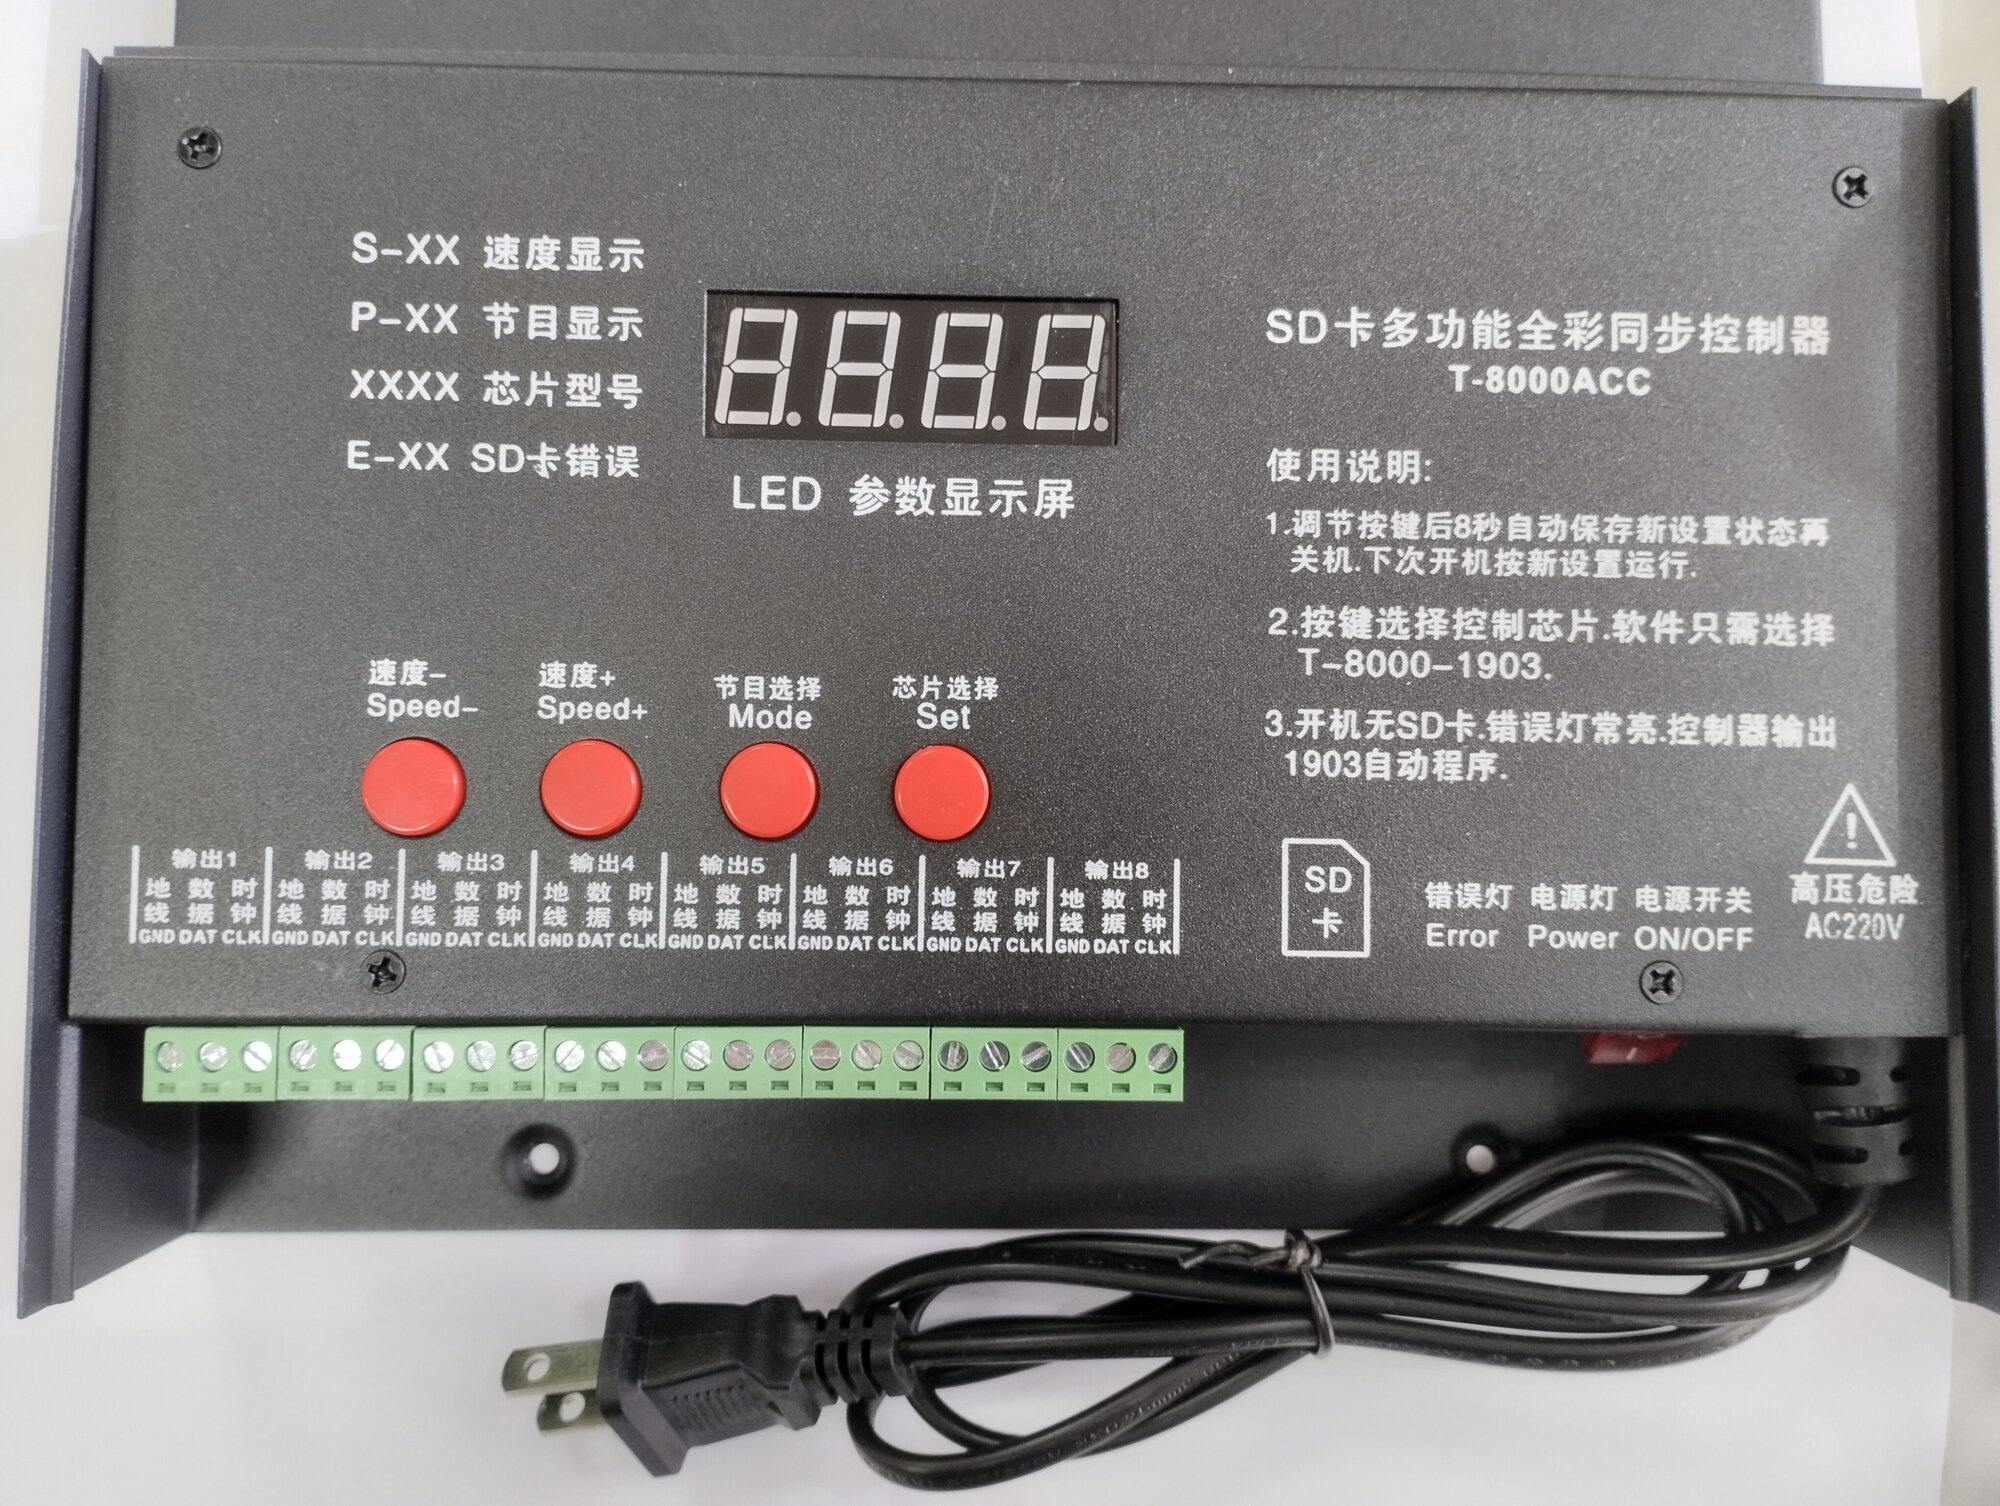 Программируемый SD card контроллер управления T8000(AC)